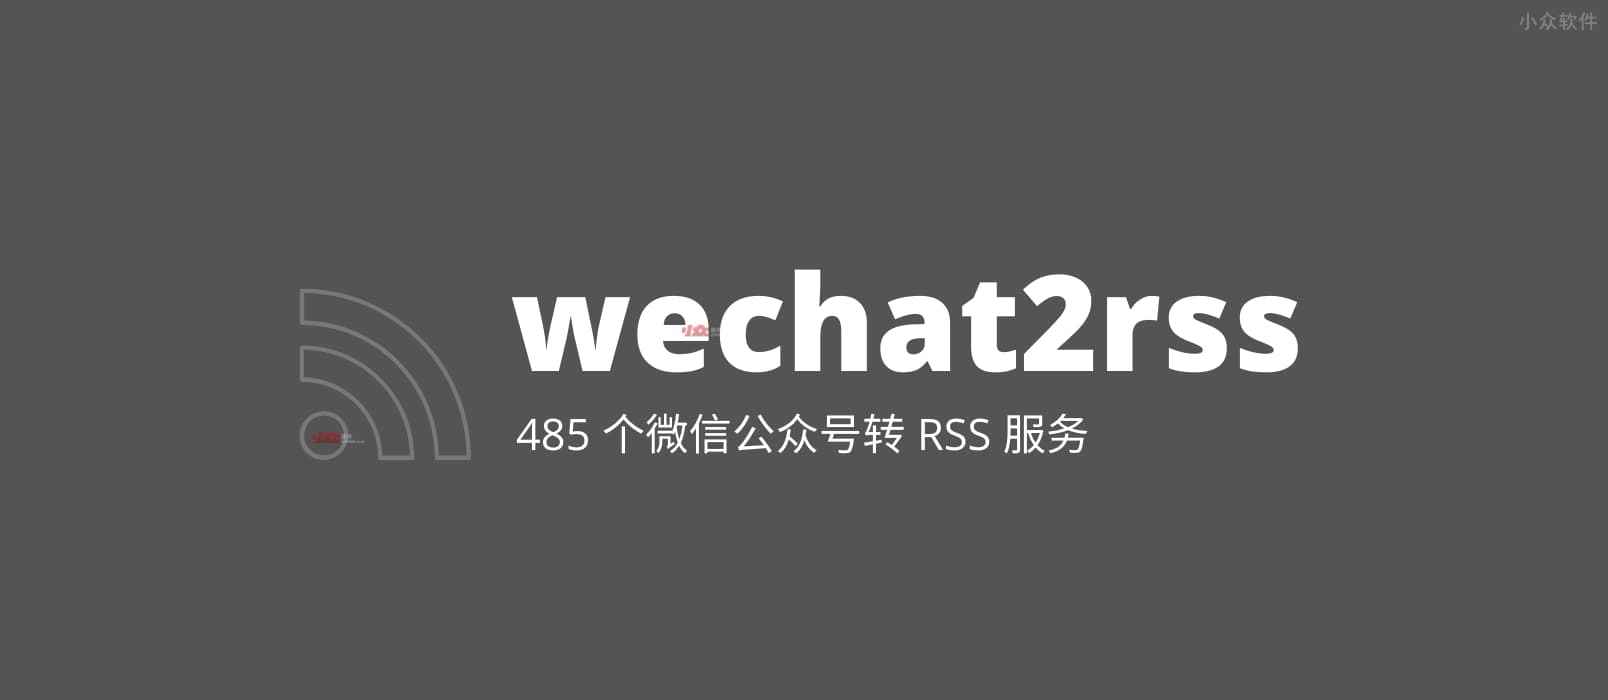 wechat2rss – 微信公众号转 RSS 服务，已支持 485 个公众号